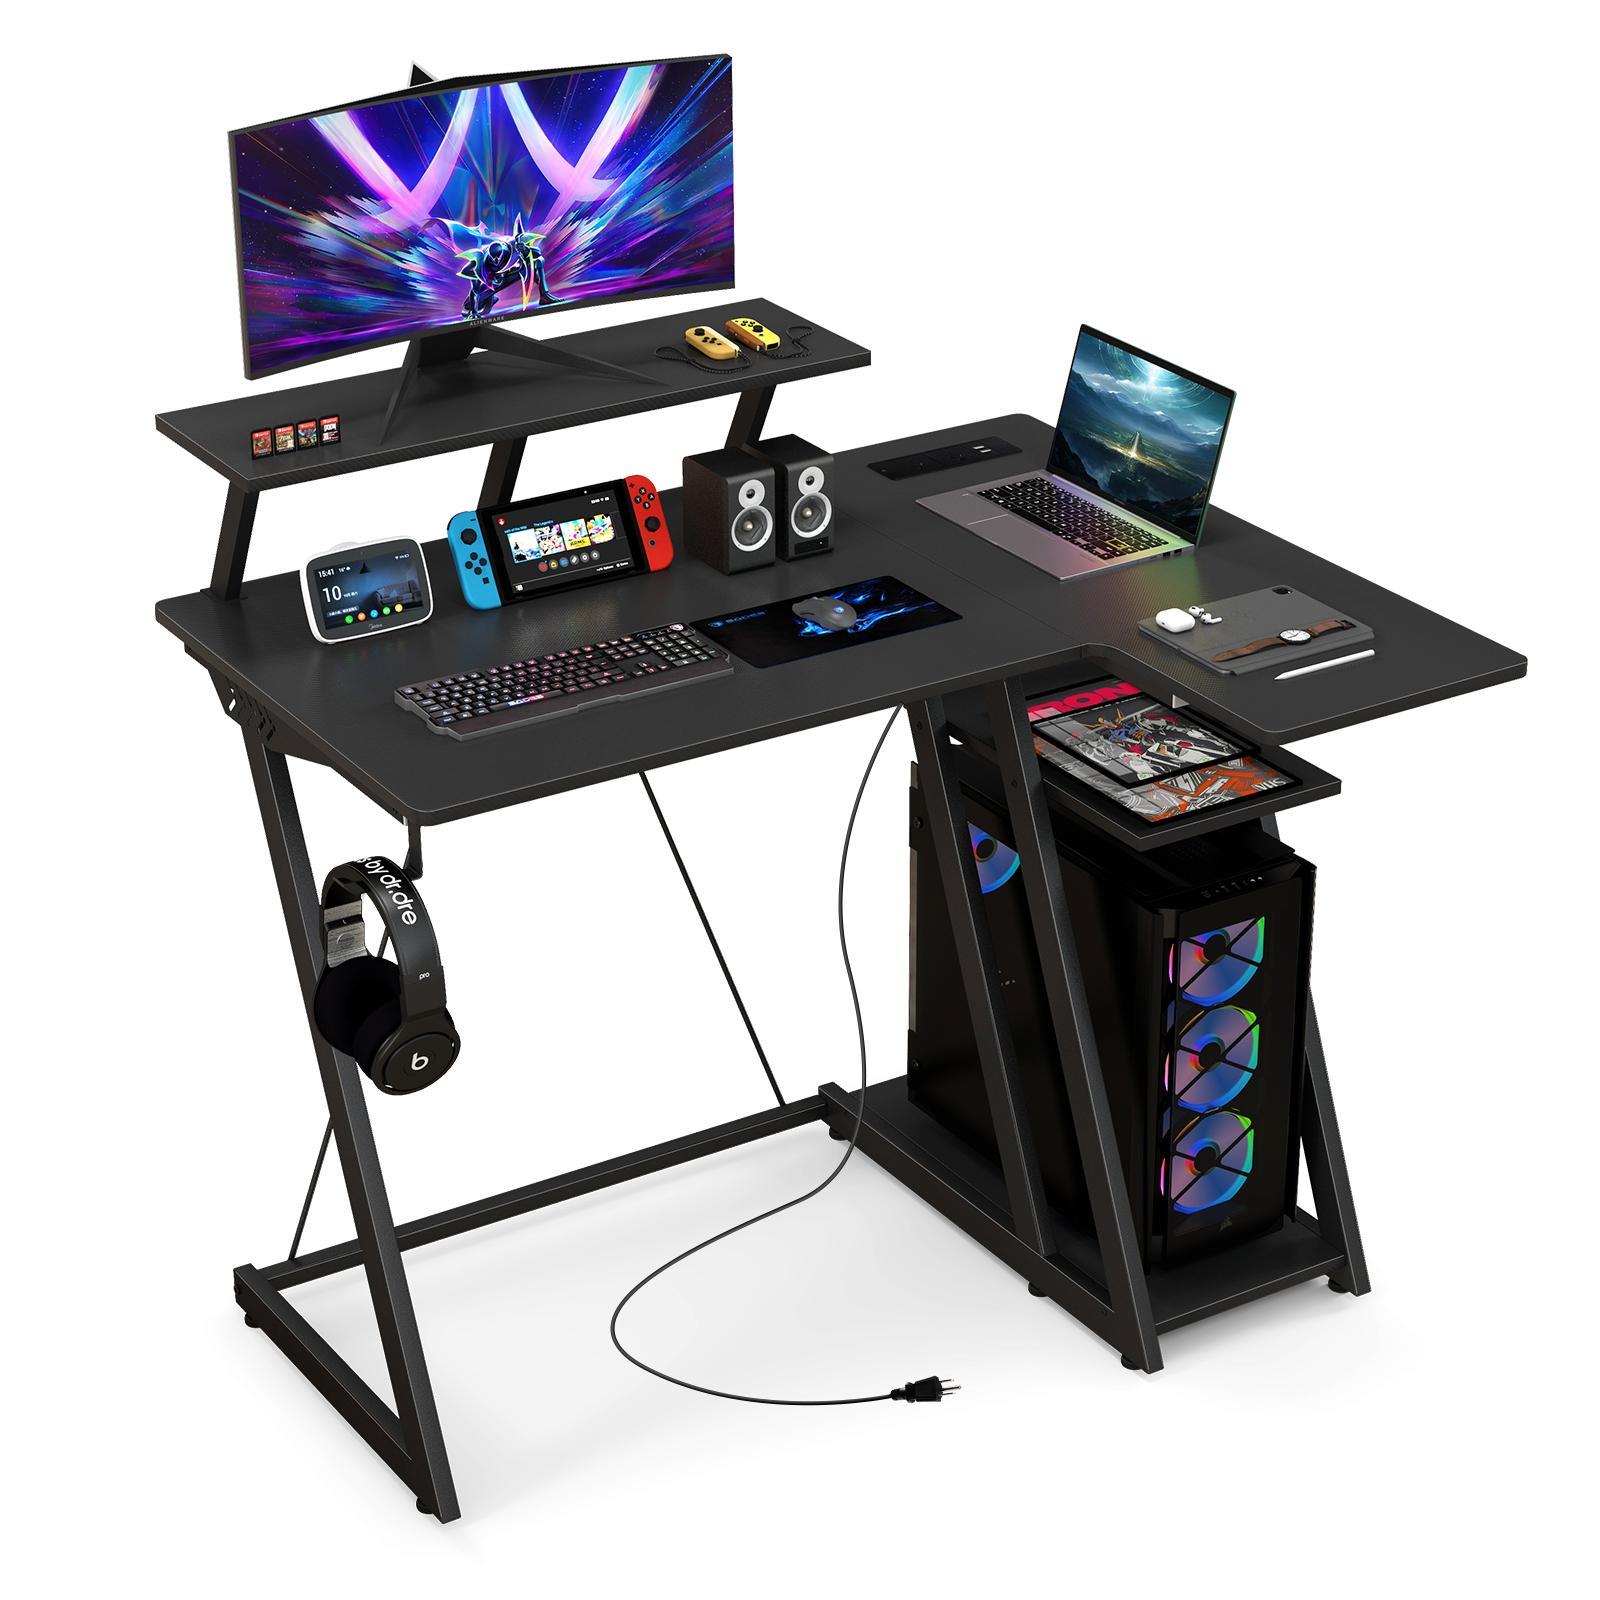 Giantex L Shaped Gaming Desk 2-tier Computer Desk w/Outlets & USB Ports Corner Home Office Desk Black